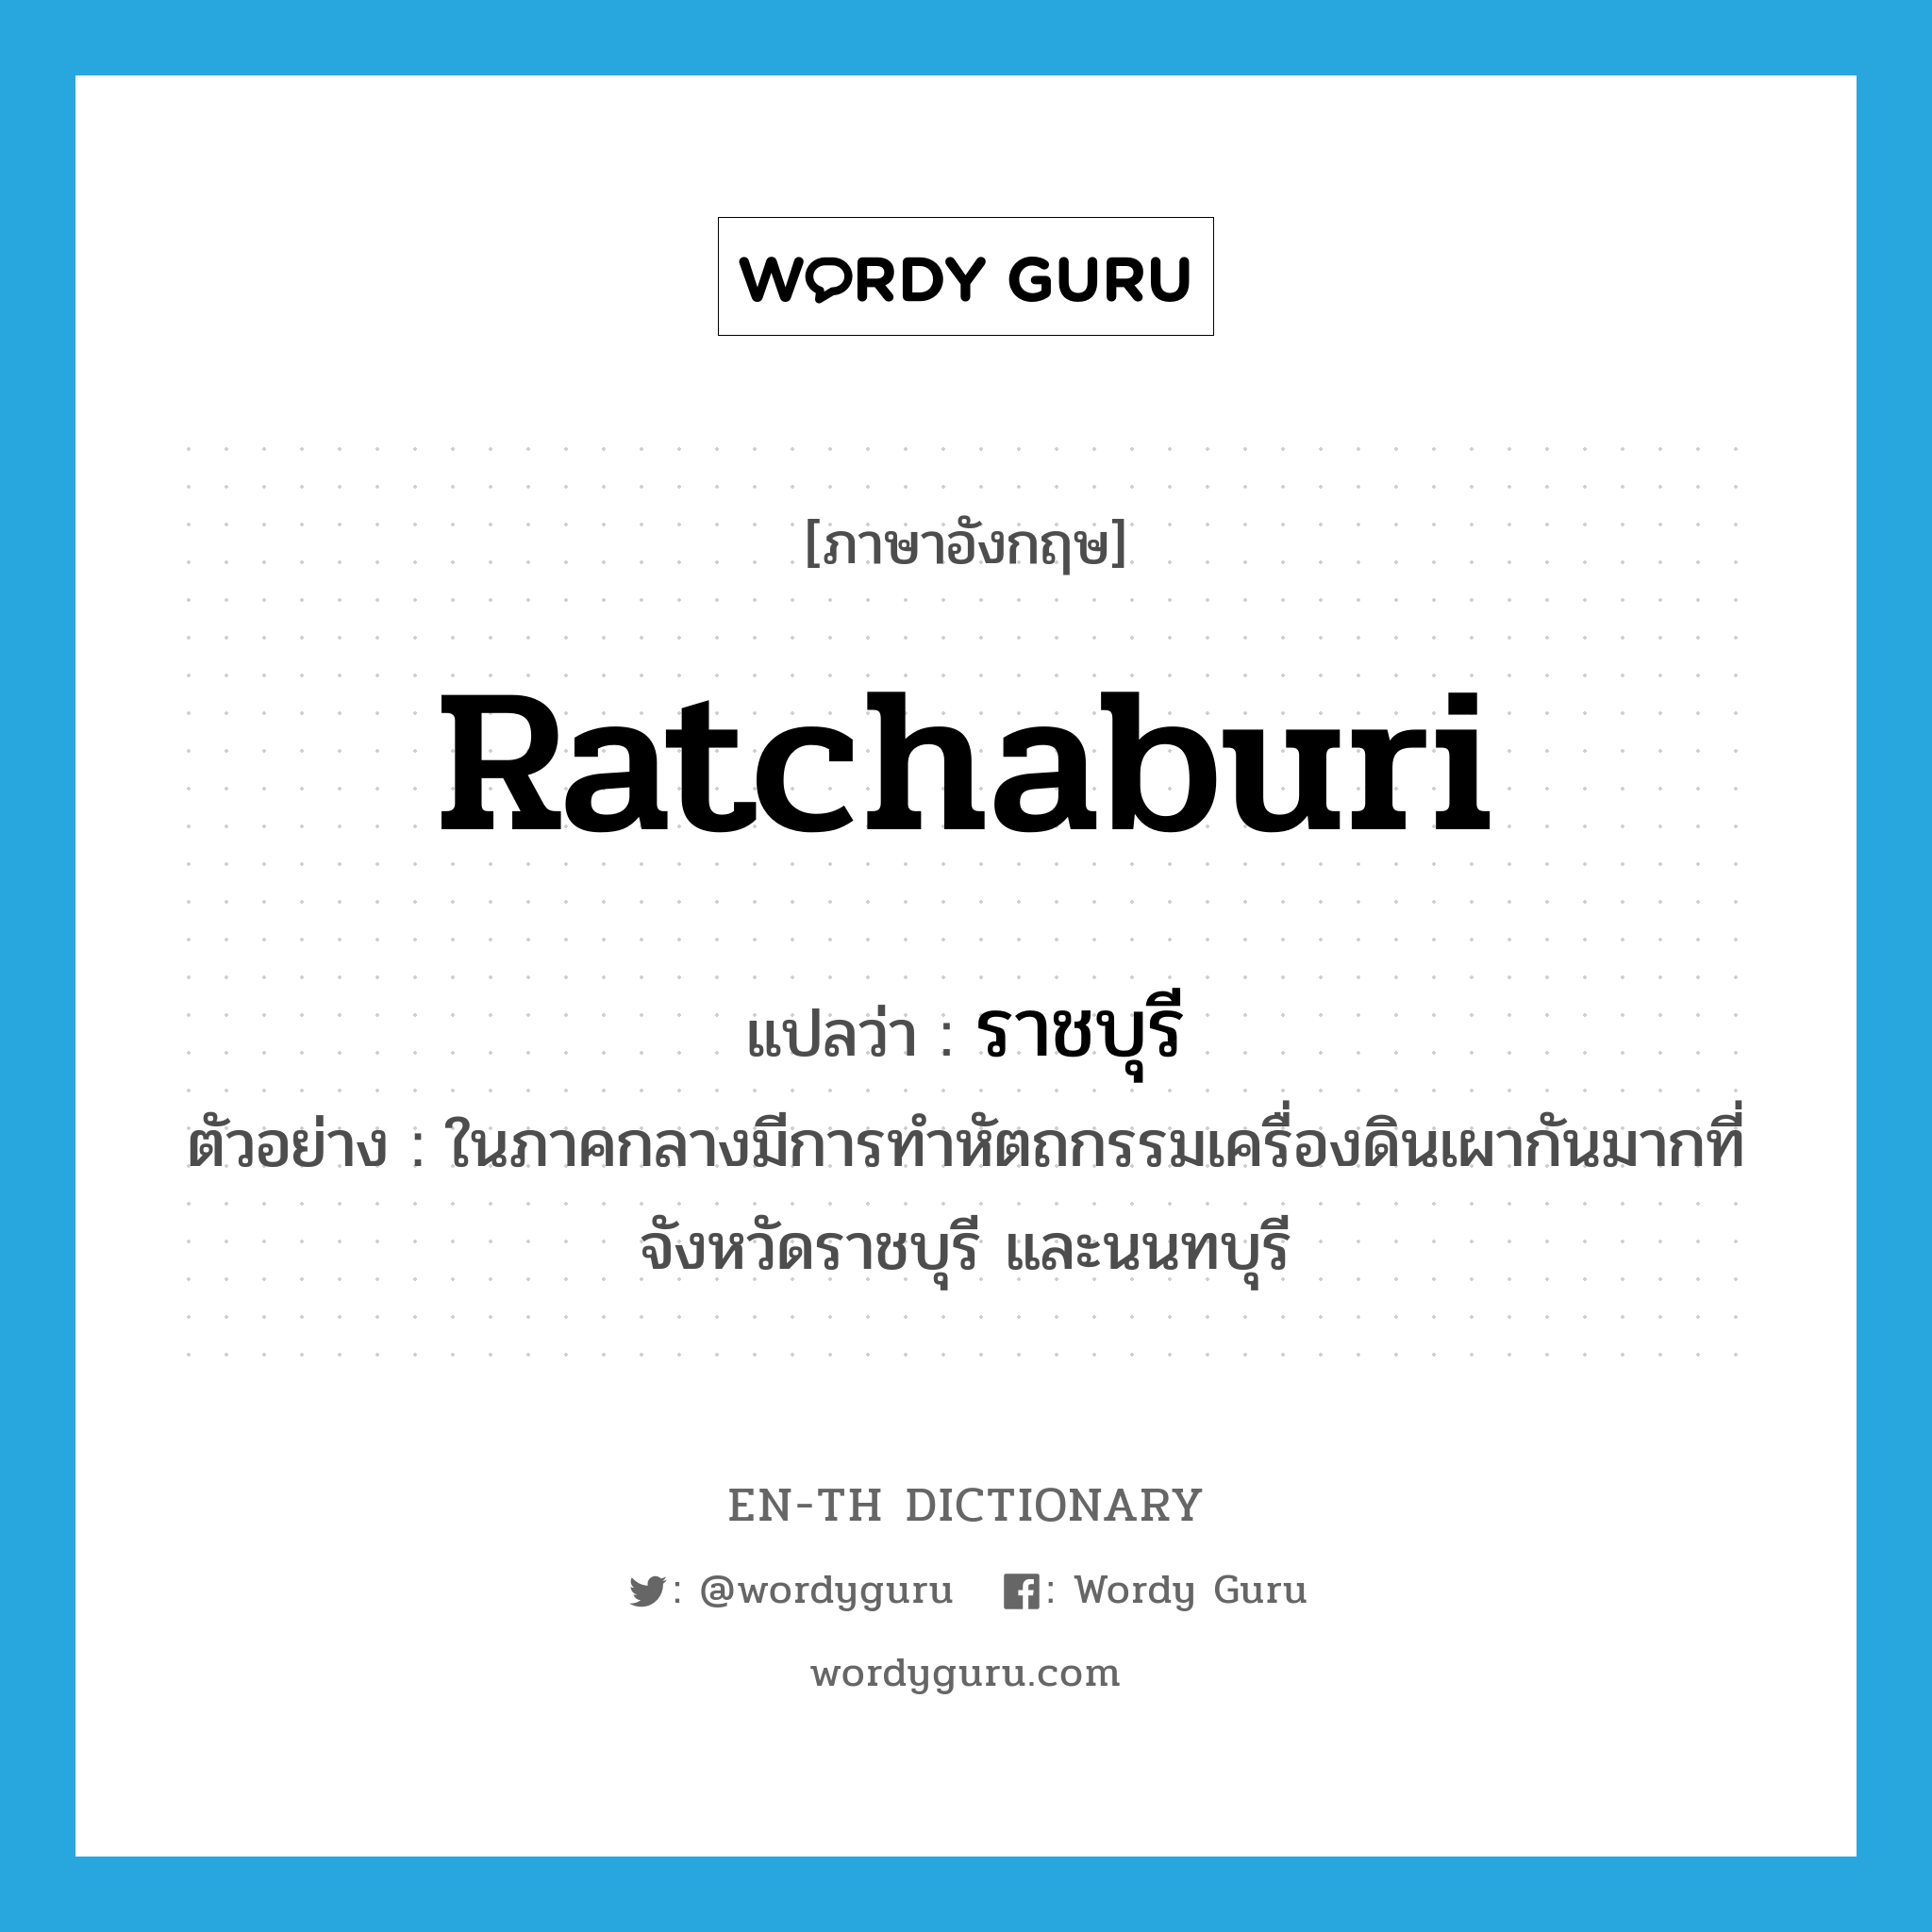 Ratchaburi แปลว่า?, คำศัพท์ภาษาอังกฤษ Ratchaburi แปลว่า ราชบุรี ประเภท N ตัวอย่าง ในภาคกลางมีการทำหัตถกรรมเครื่องดินเผากันมากที่จังหวัดราชบุรี และนนทบุรี หมวด N